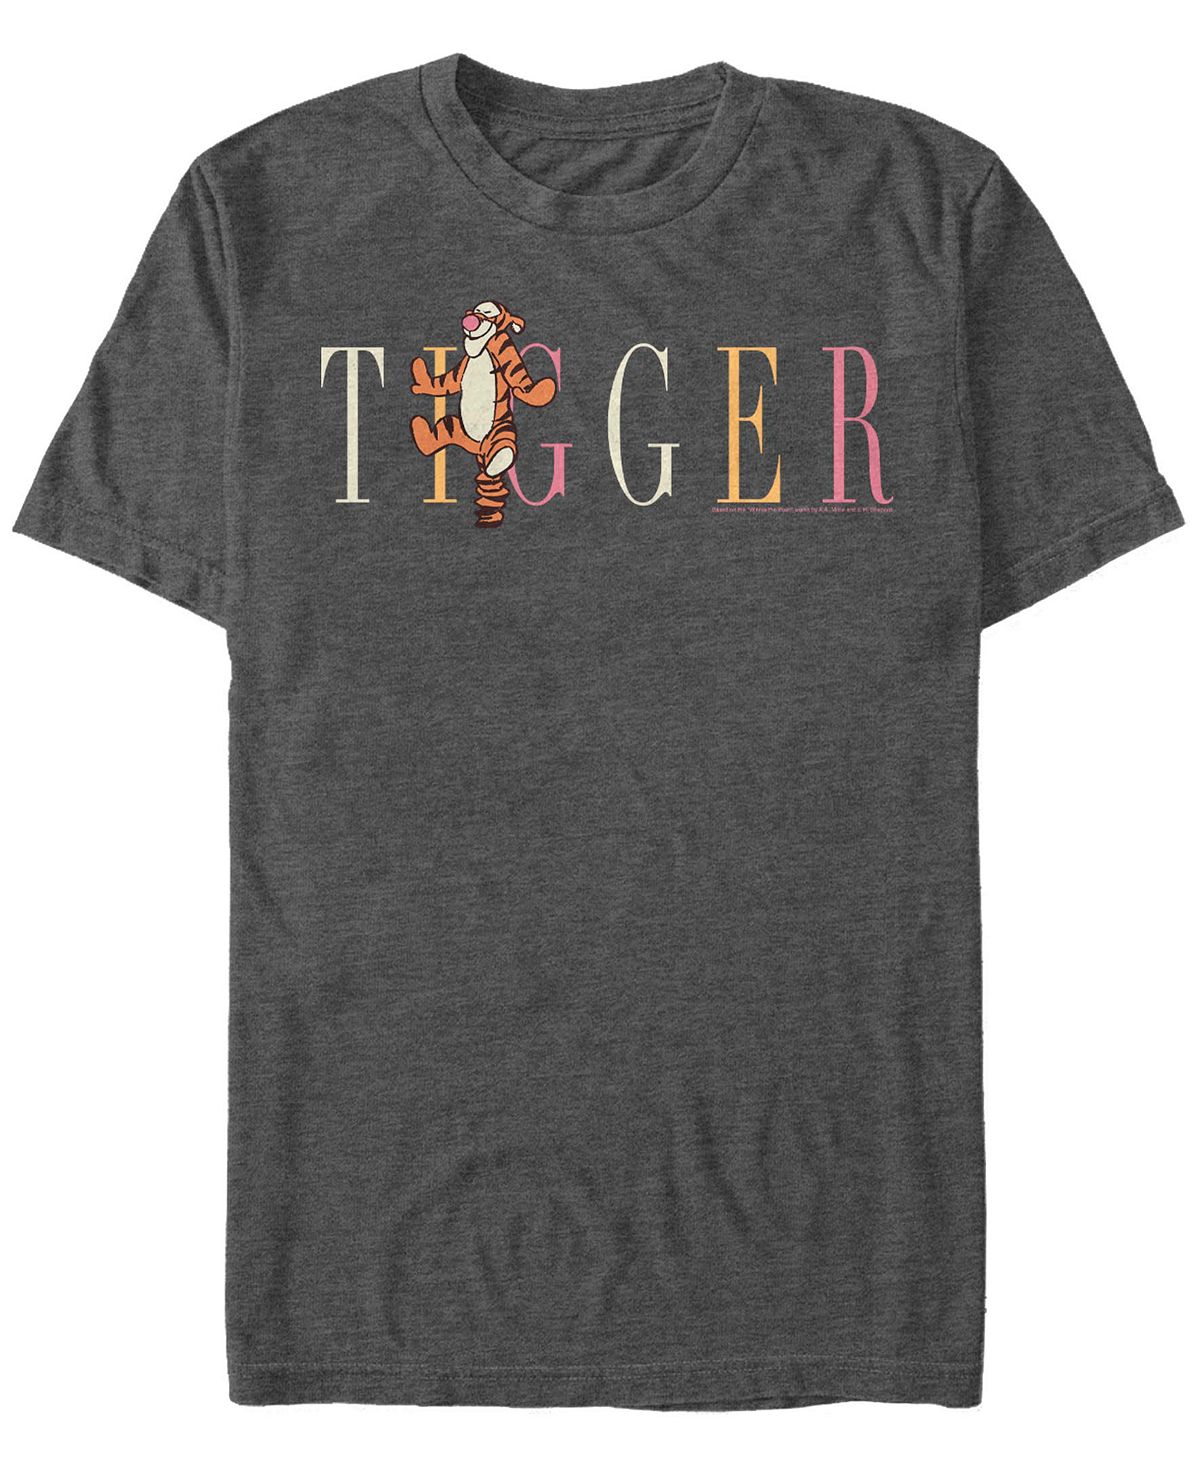 Мужская футболка с коротким рукавом tigger fashion Fifth Sun, темно-серый сравнилки винни пуха горшочек винни пуха полный пустой